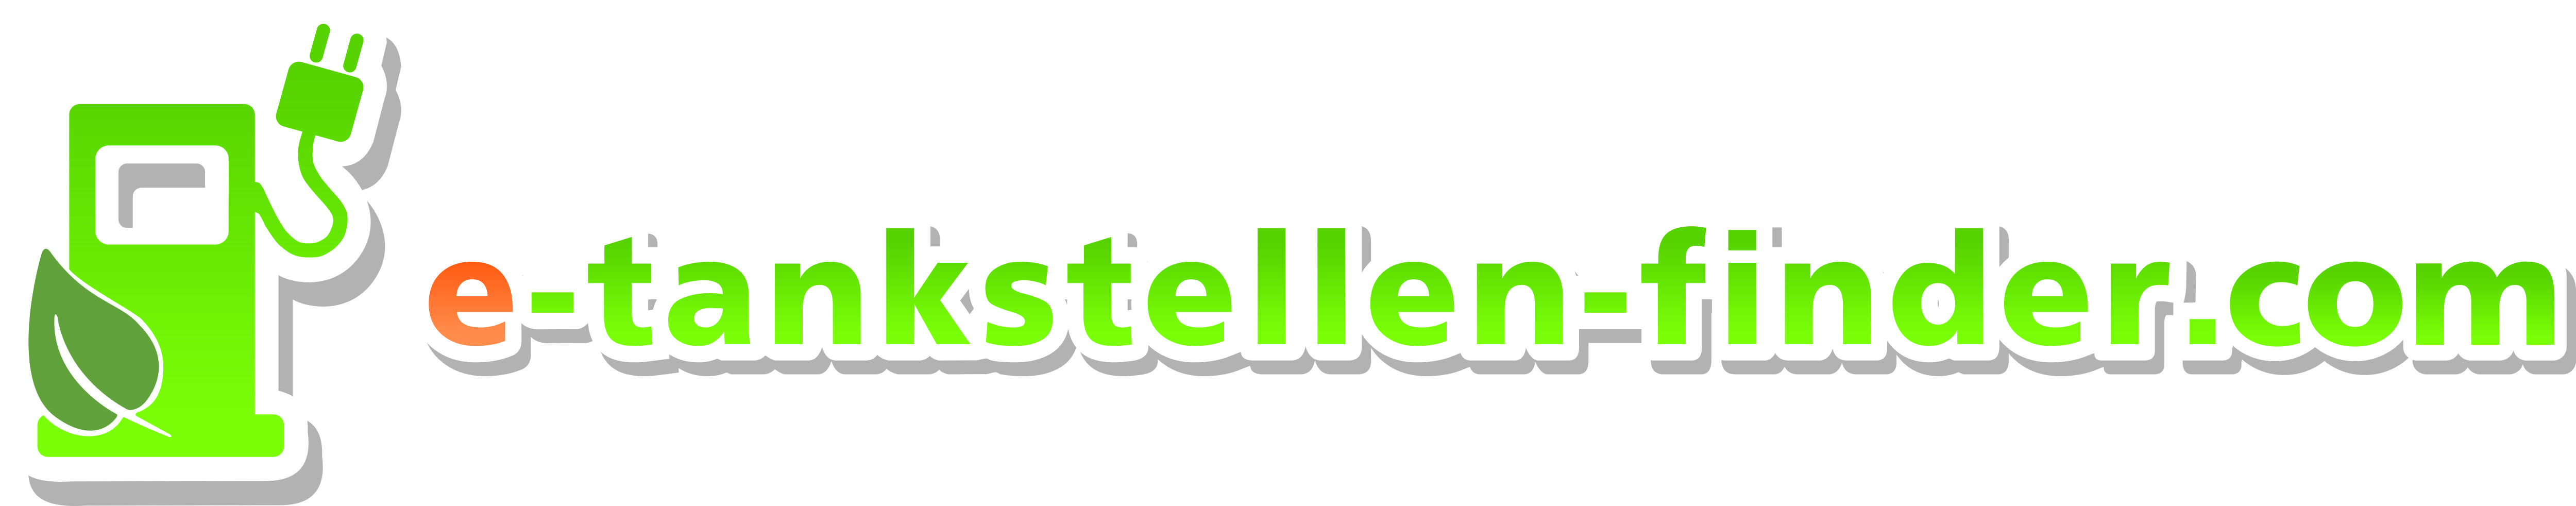 Logo_E-Tankstellen-Finder_com